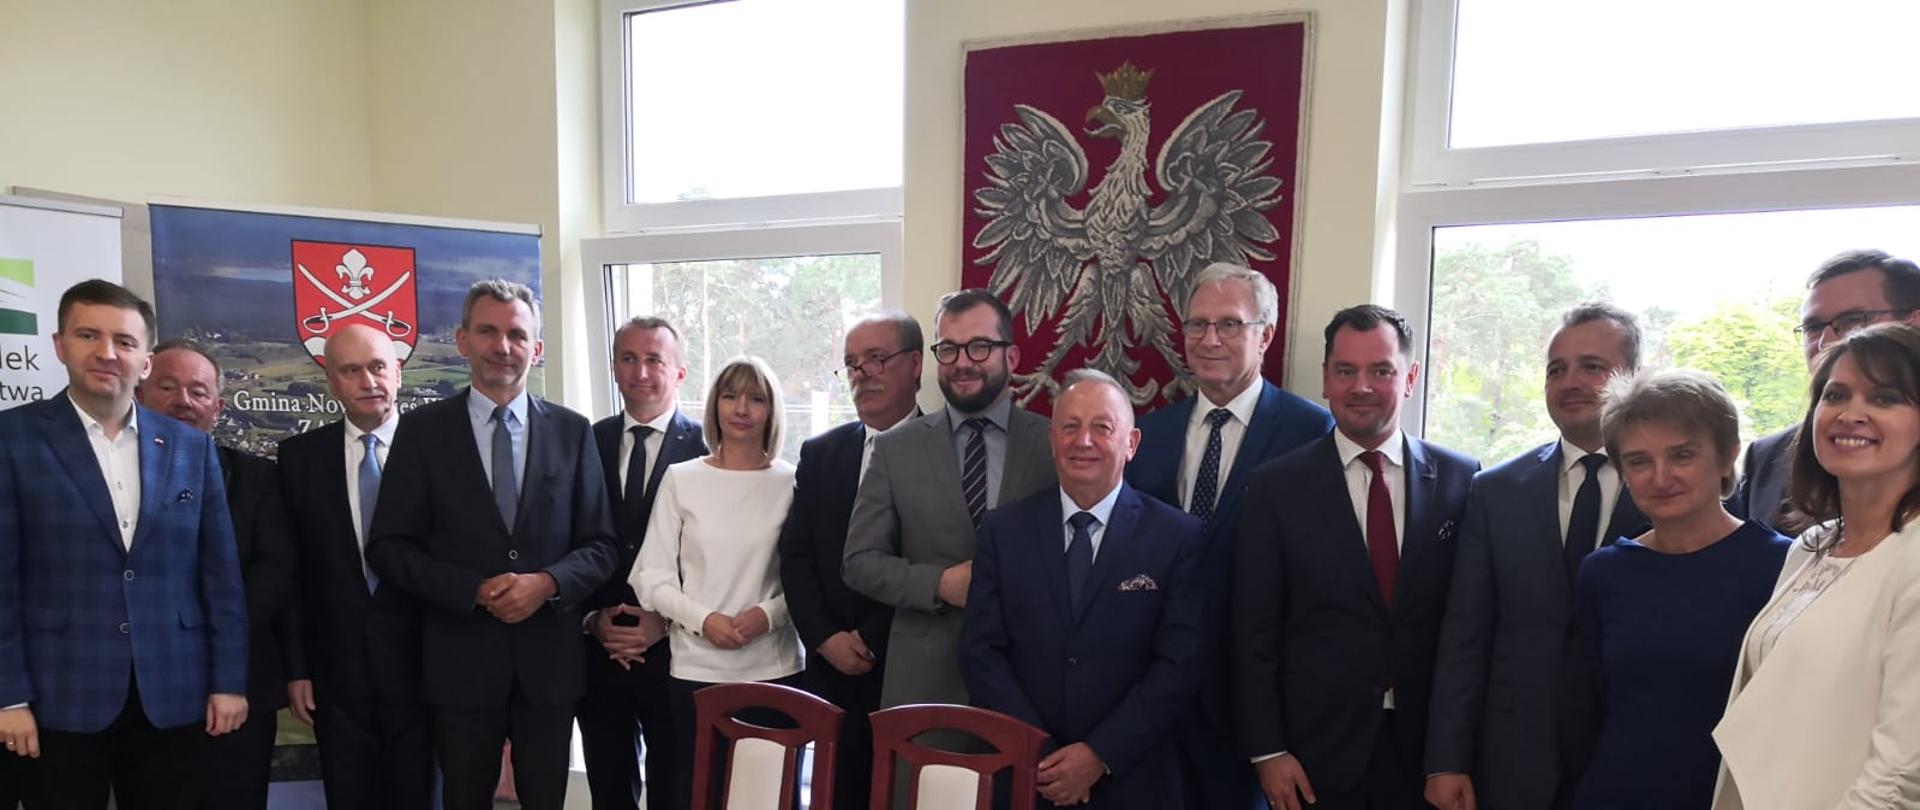 Grupa osób stojących za stołem, wśród nich minister Grzegorz Puda.